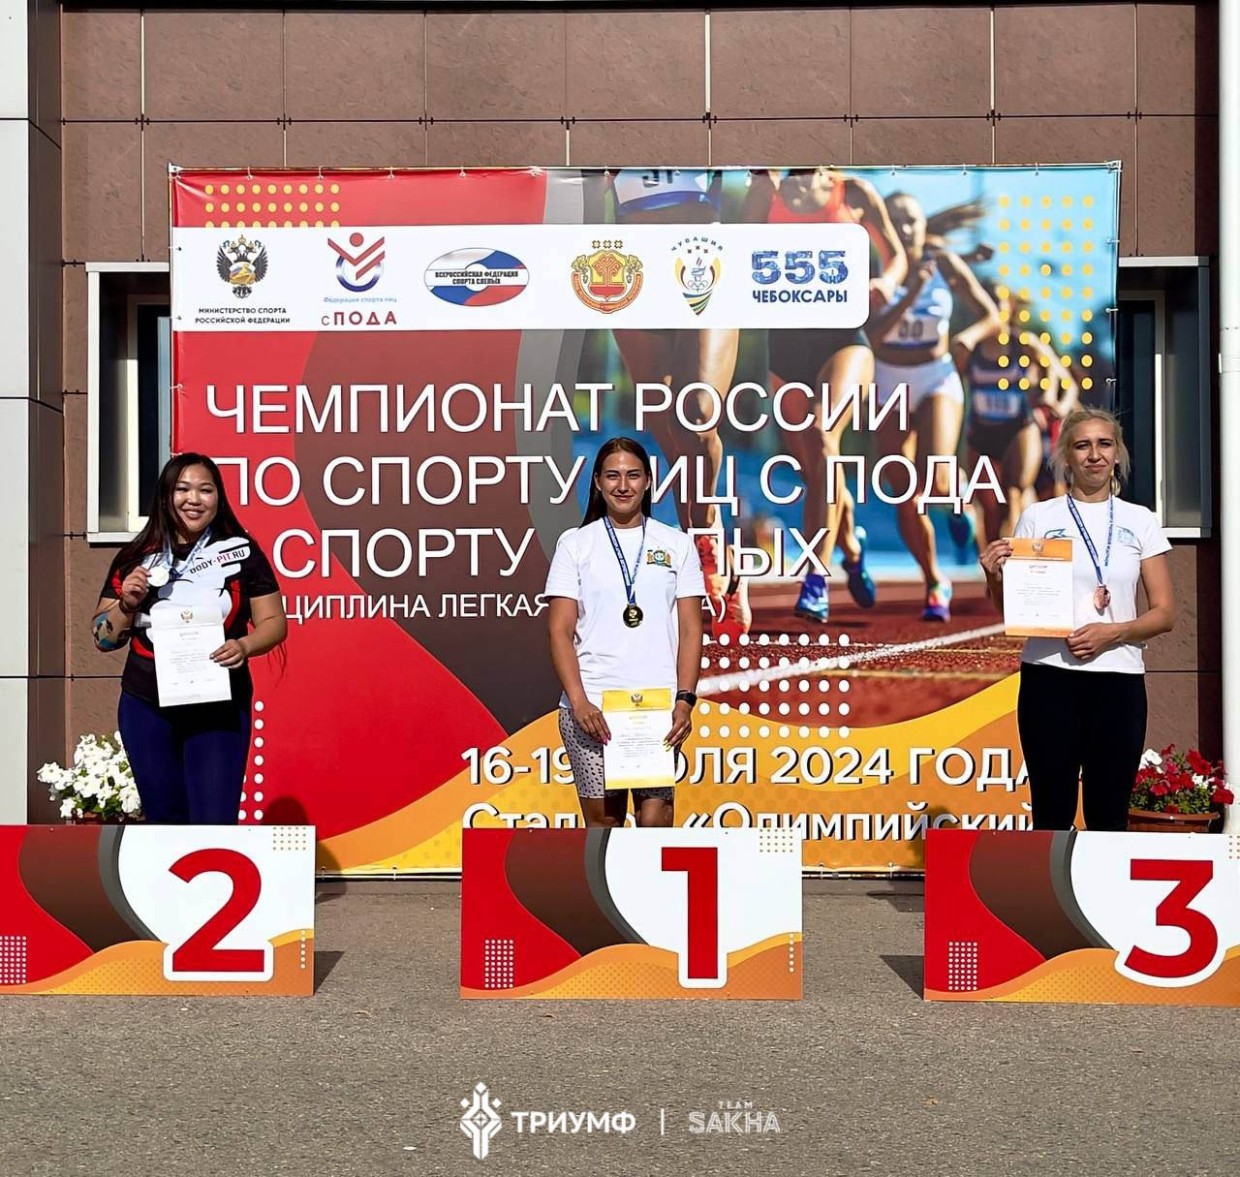 Четыре медали завоевали спортсмены сборной Якутии в первый день чемпионата России по легкой атлетике (ПОДА)